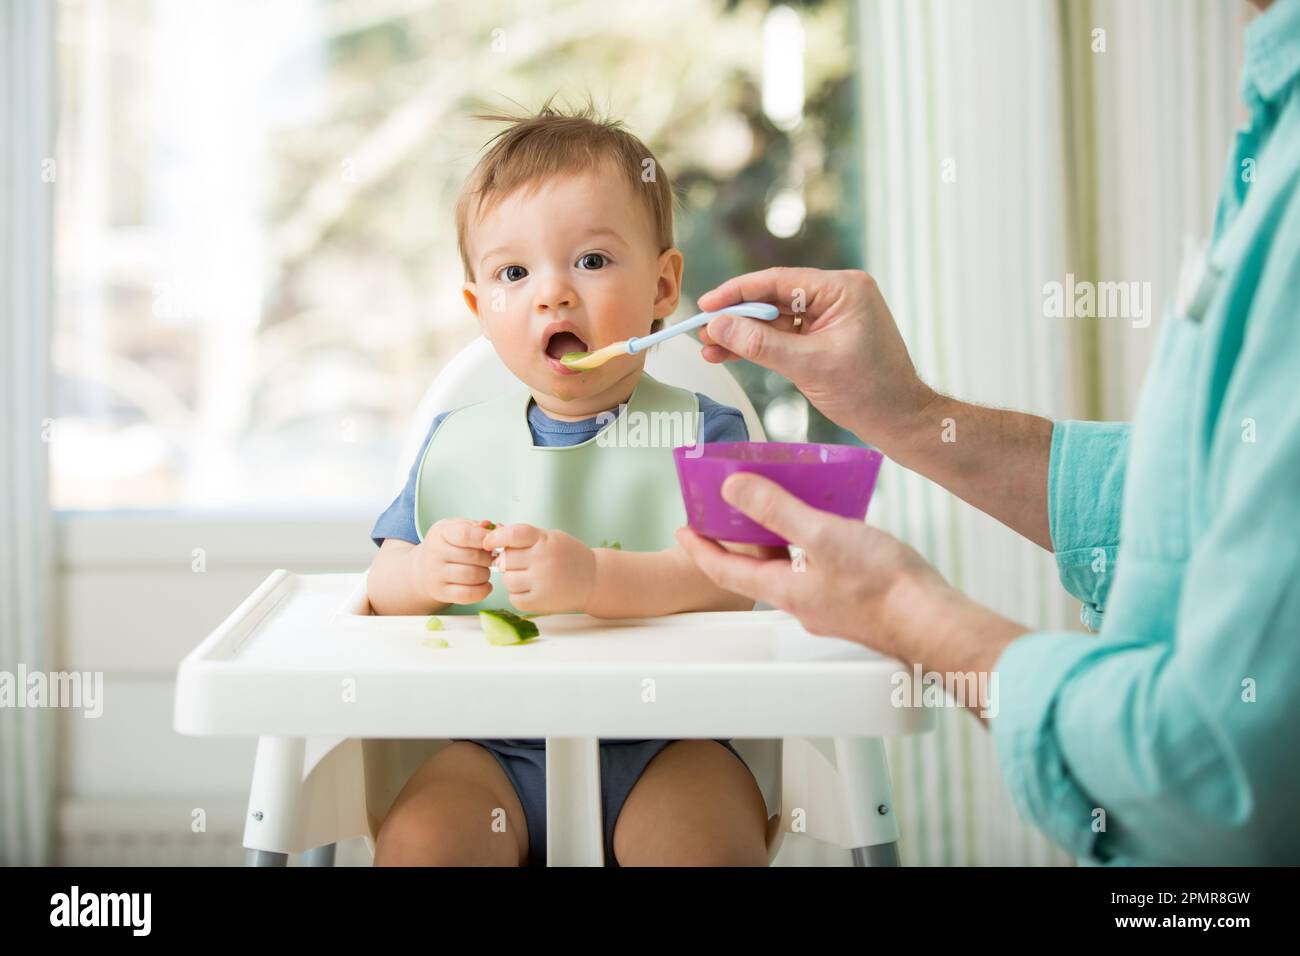 Père nourrissant son bébé mignon avec la première nourriture solide, bébé assis dans une chaise haute. Enfant goûtant des légumes à table, découvrant de nouveaux aliments. Banque D'Images